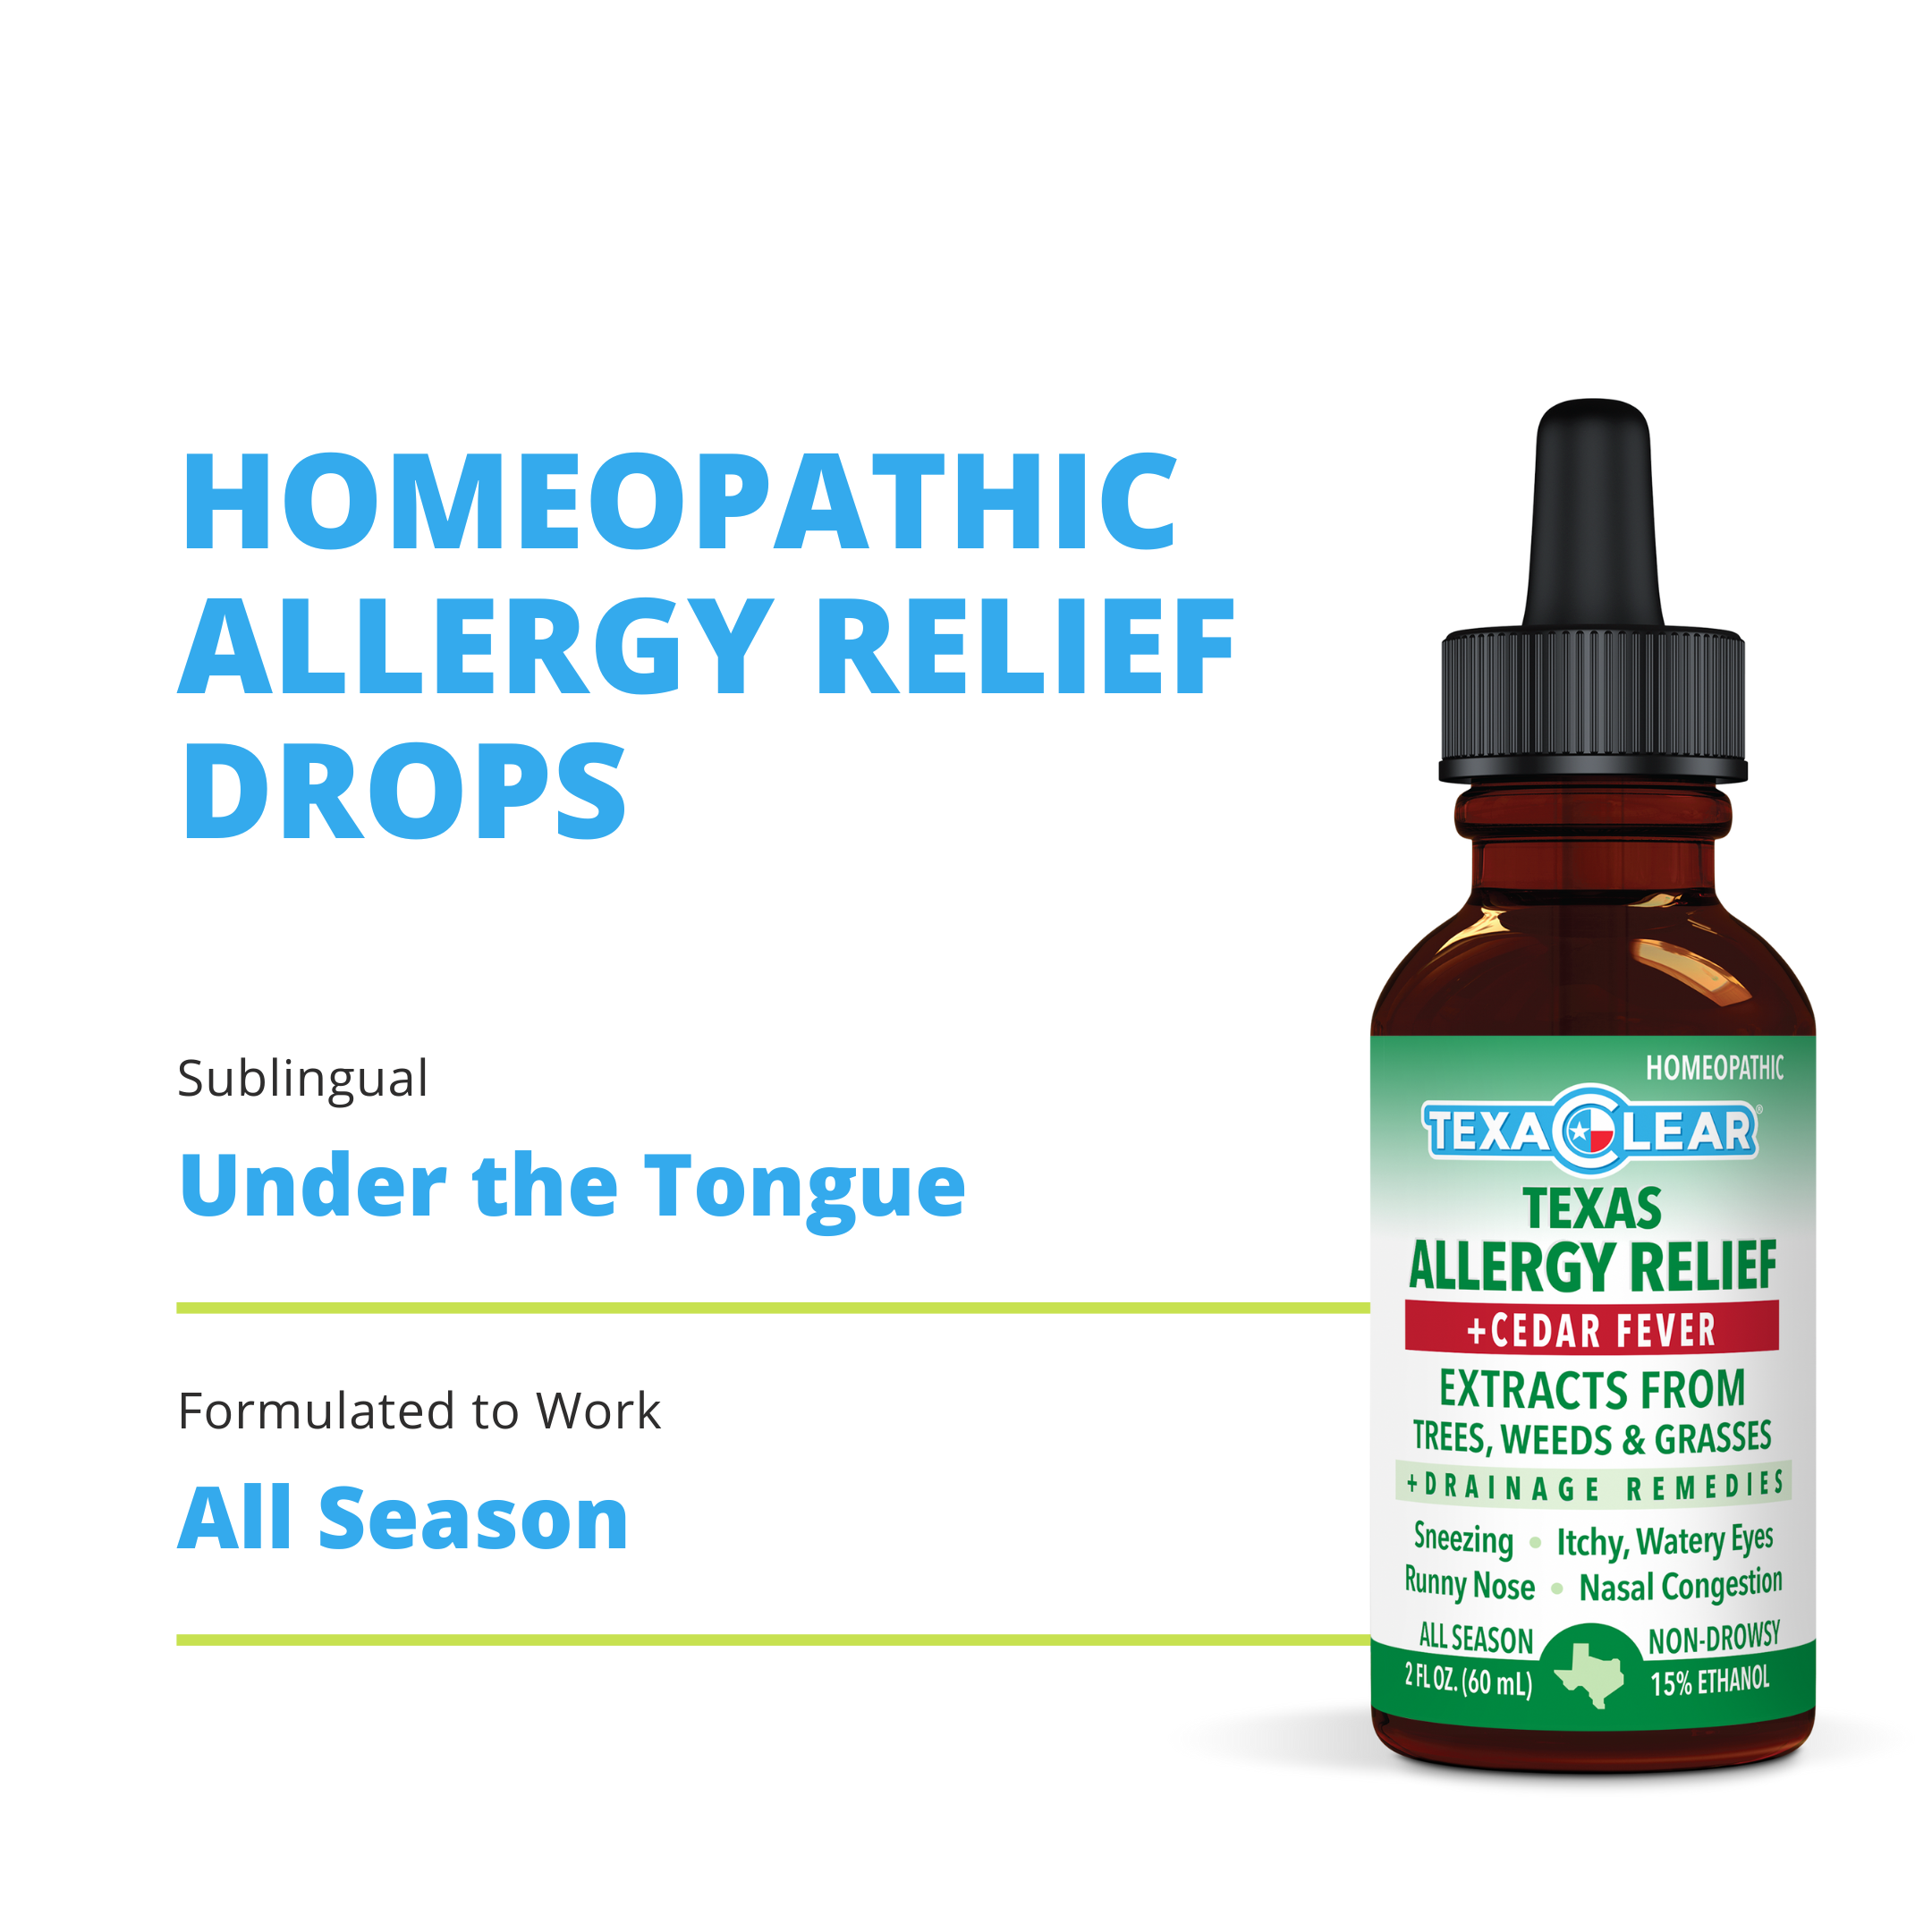 All season allergy relief drops for non-drowsy Texas allergy relief. 